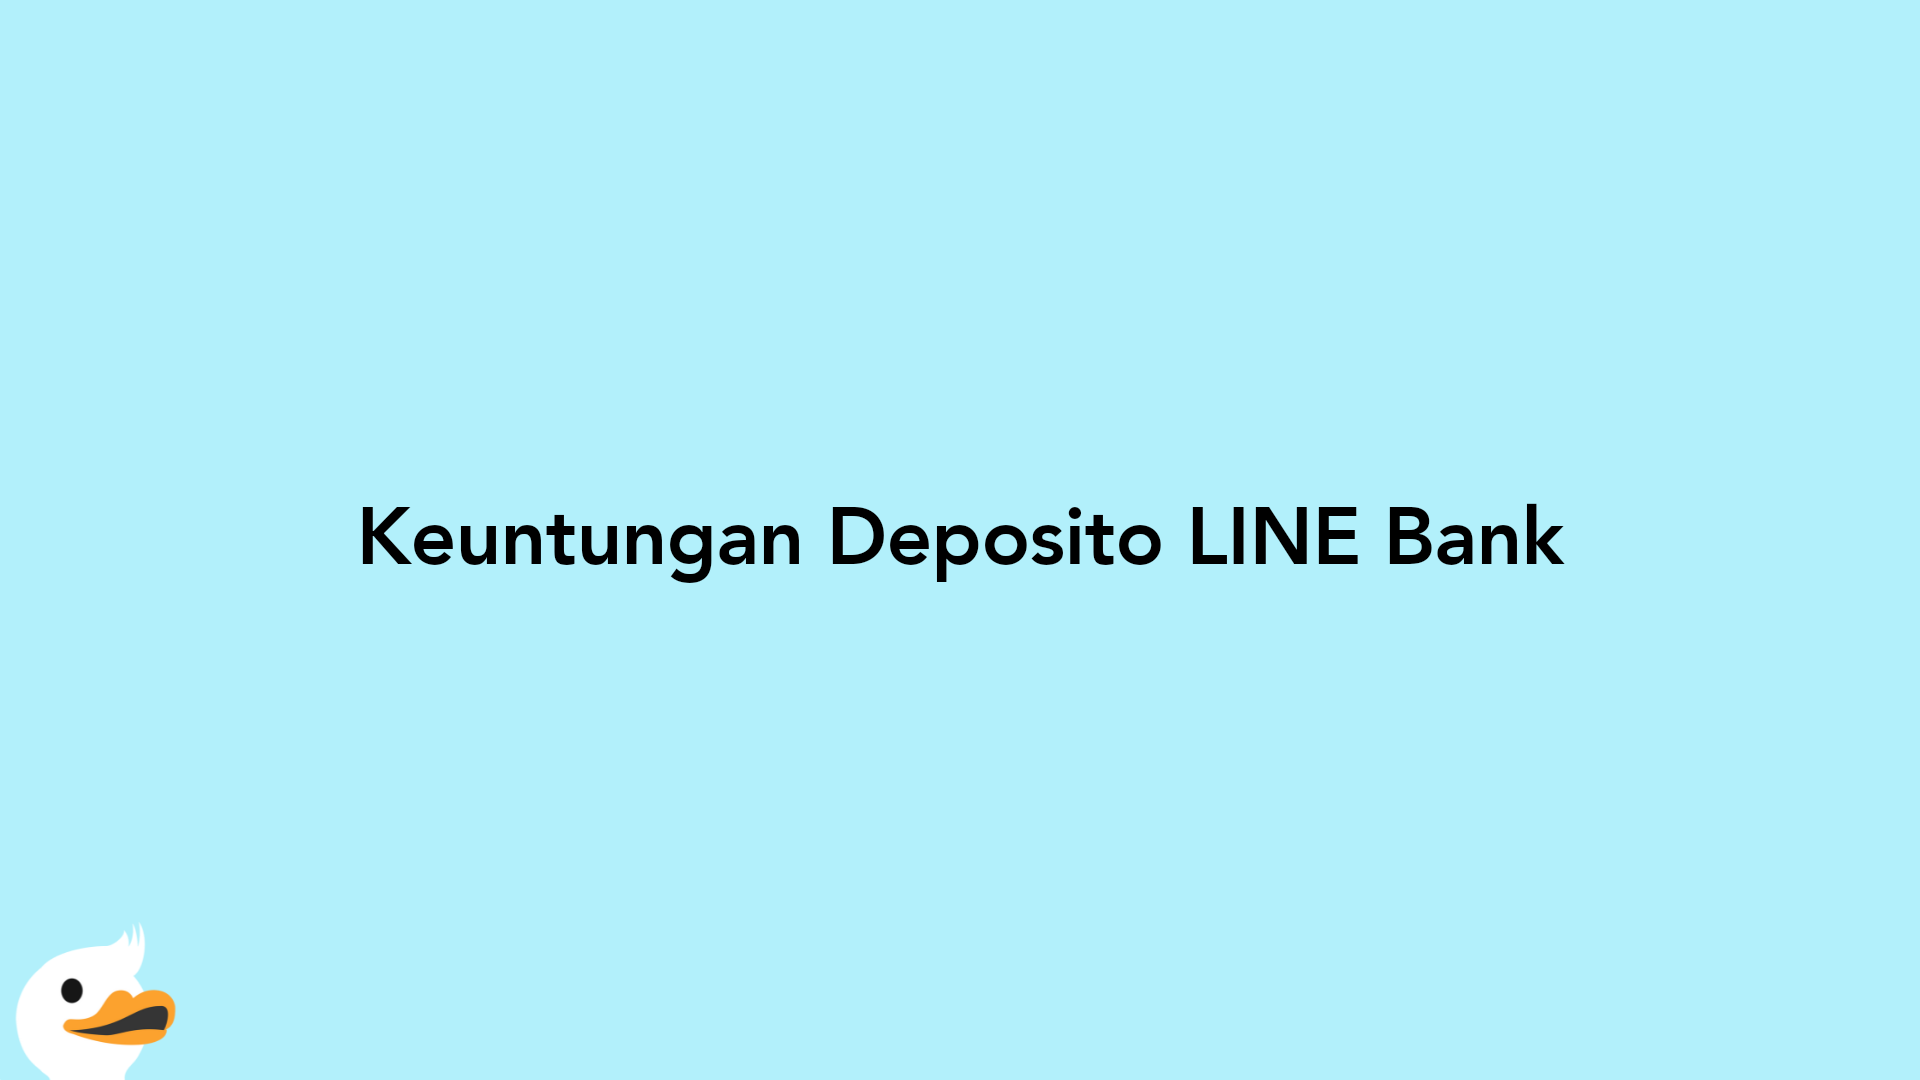 Keuntungan Deposito LINE Bank